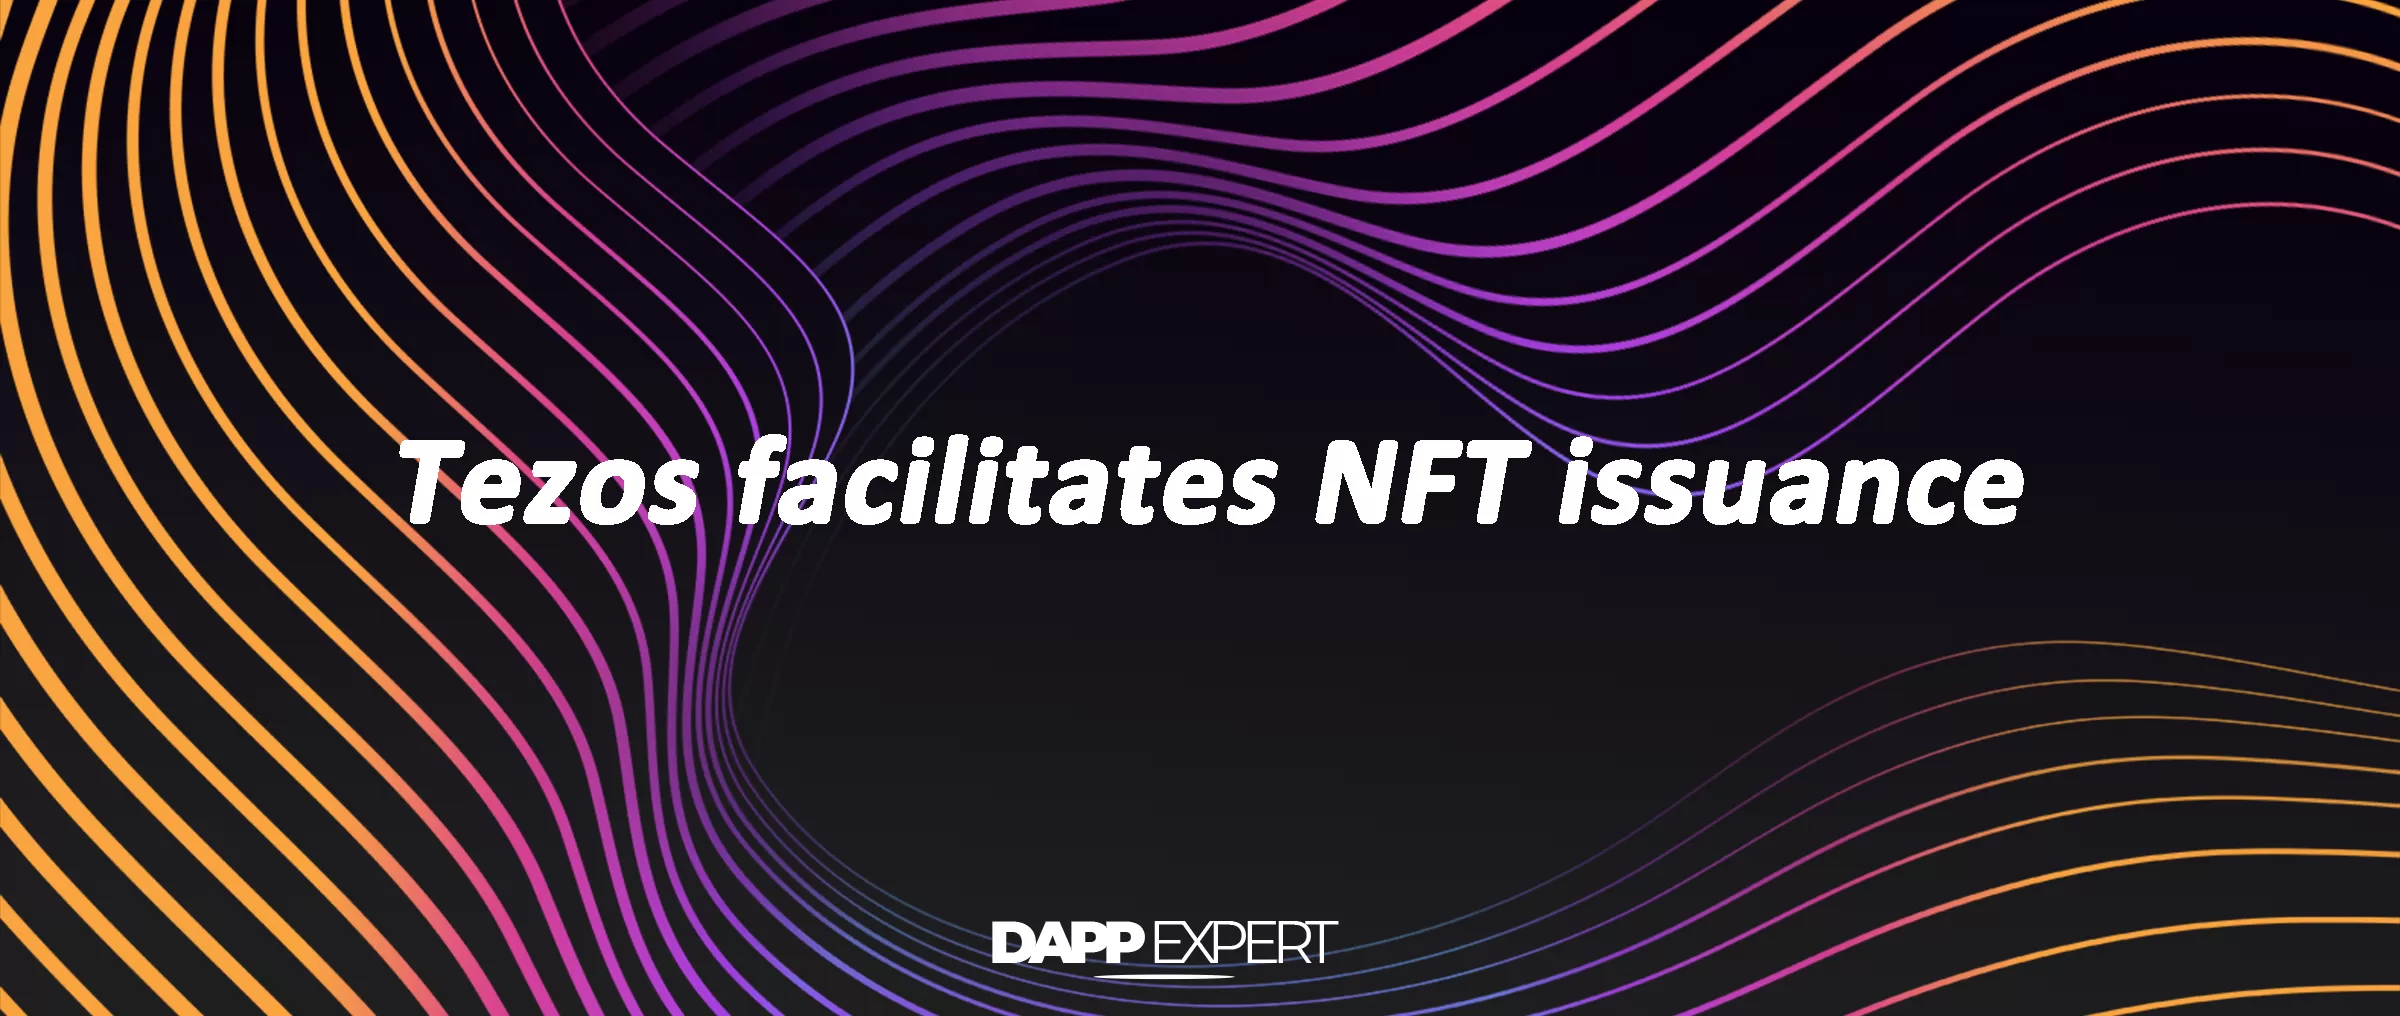 Tezos facilitates NFT issuance